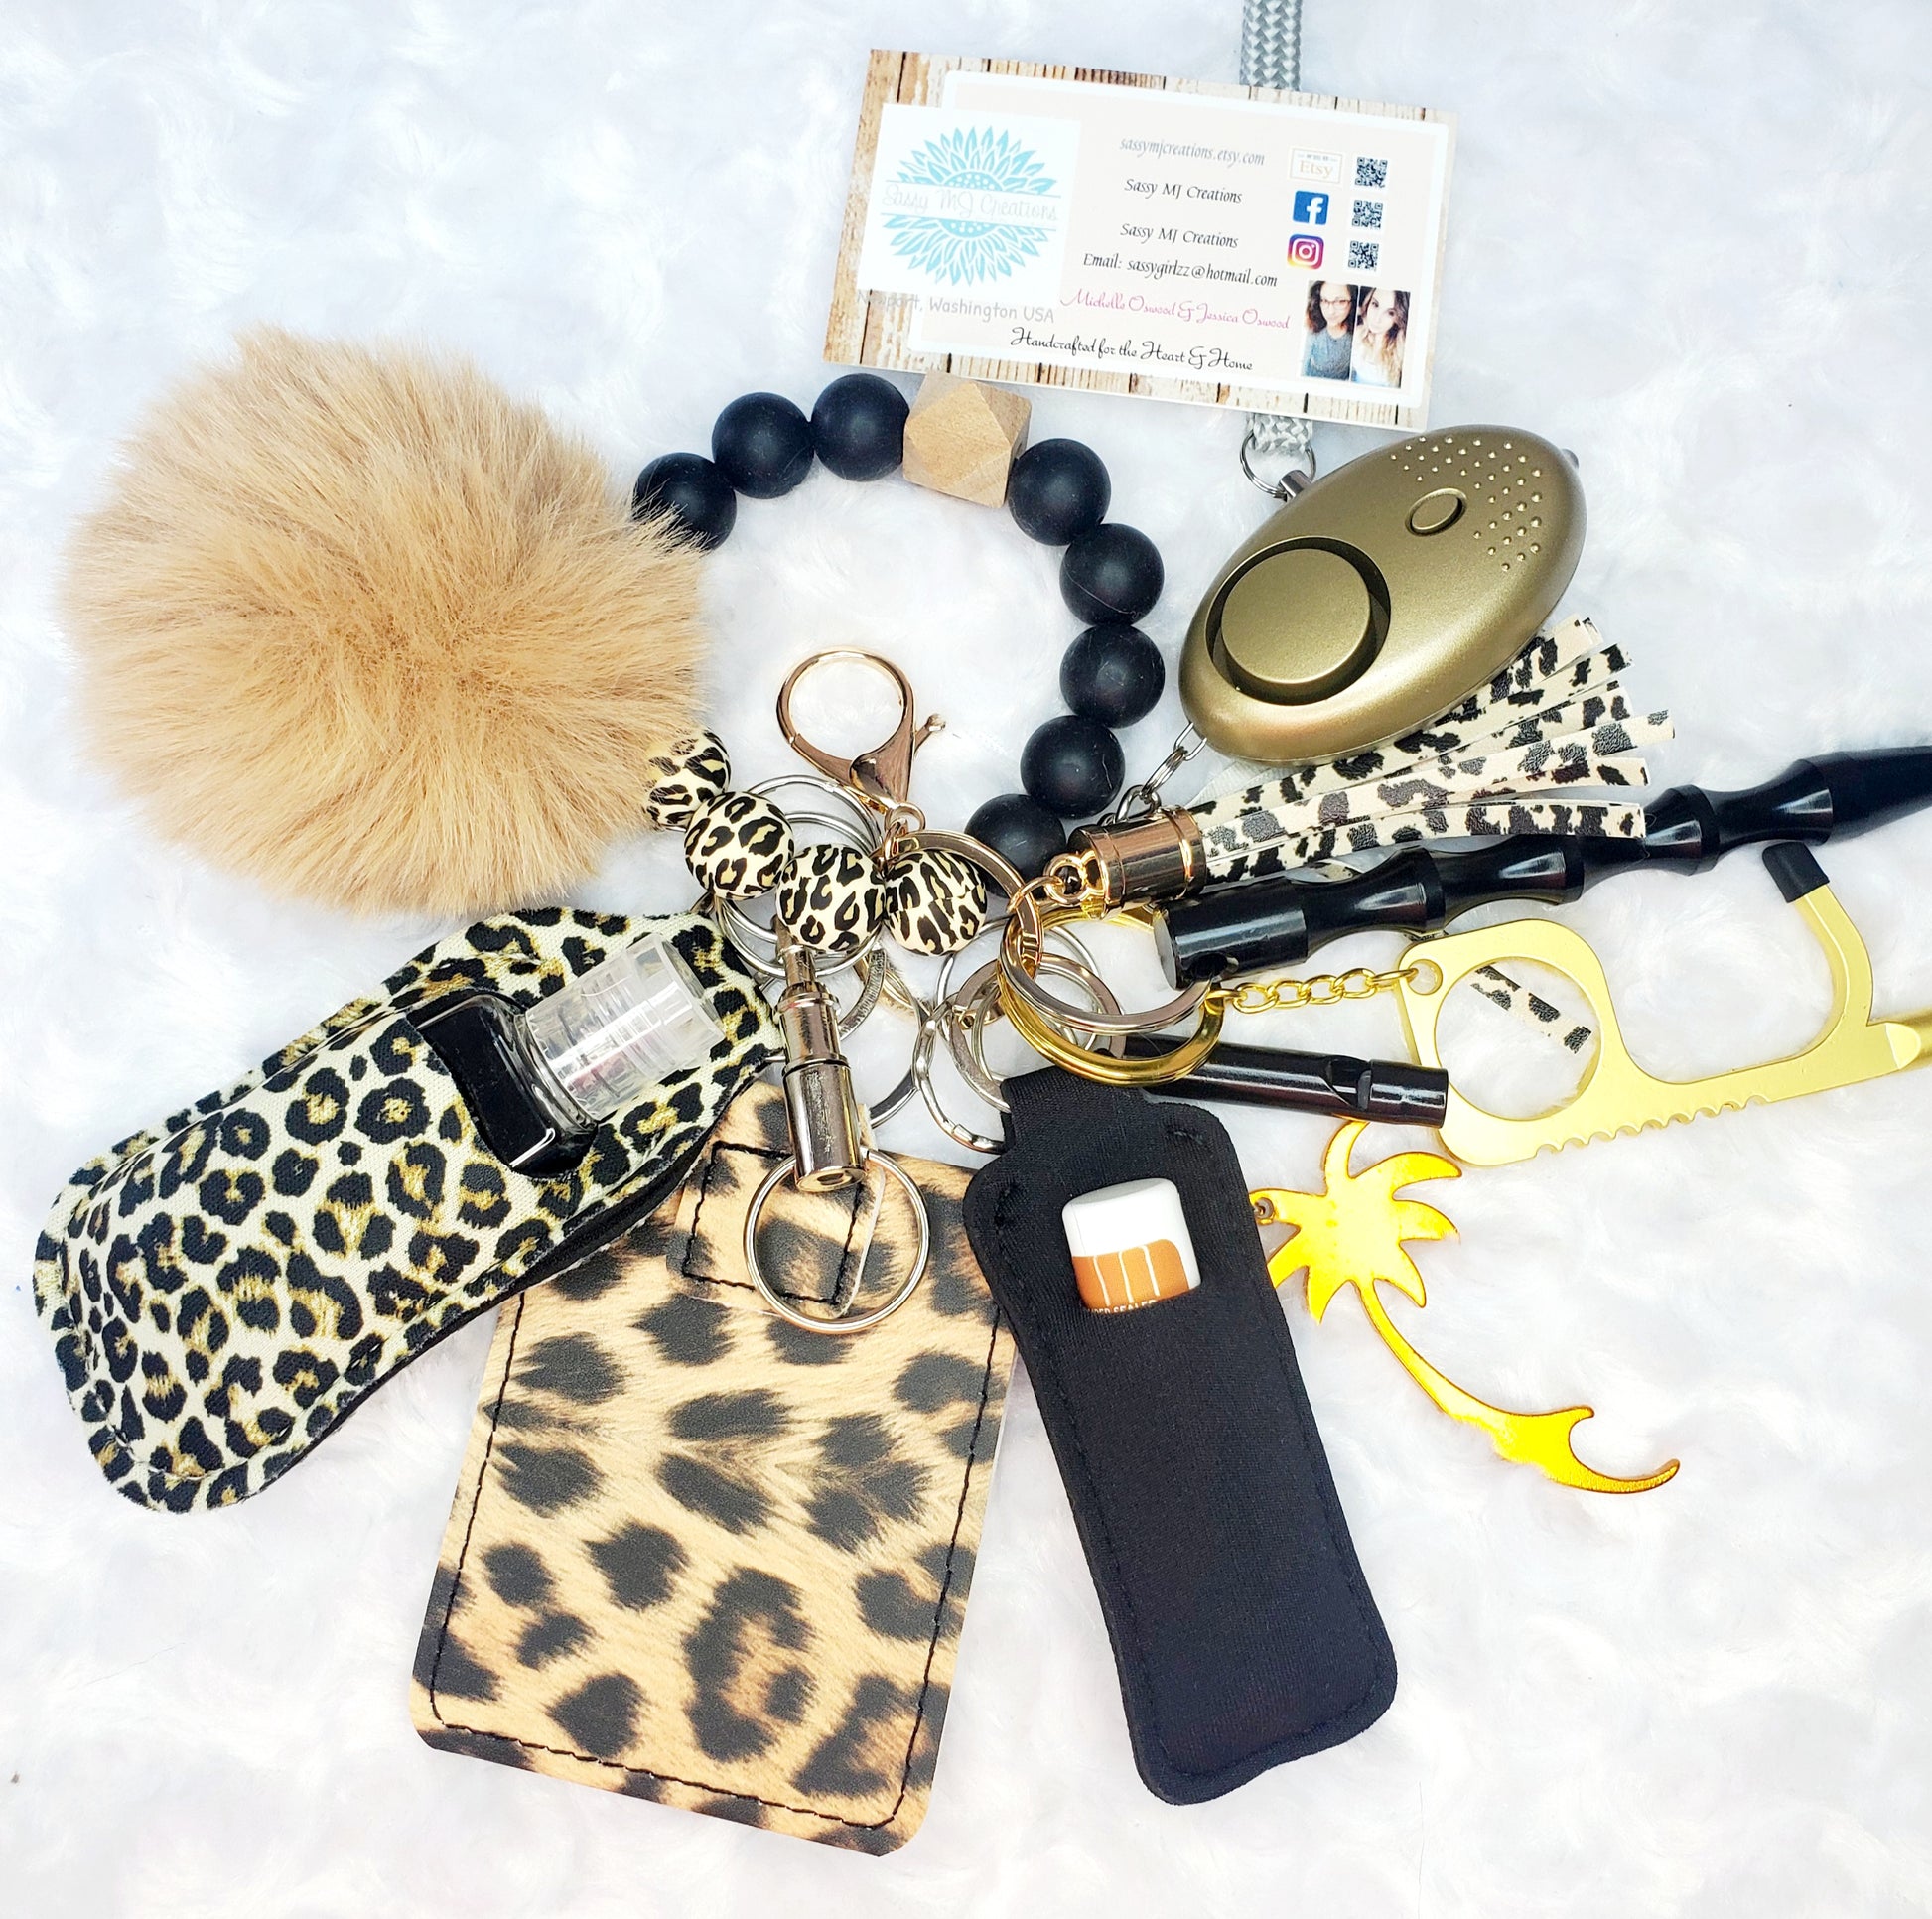 Beaded Bracelet (Leopard) Safety Keychain Set-Personal Safety Kit